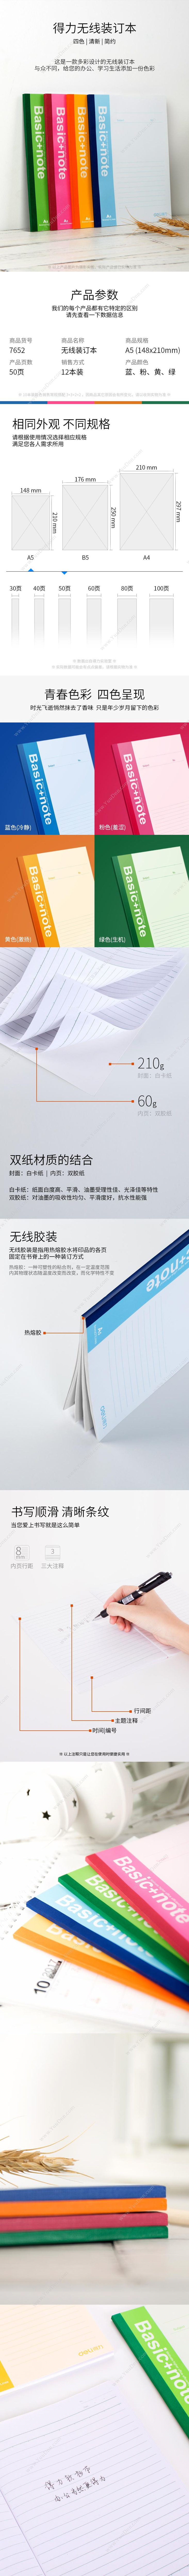 钊盛 ZhaoSheng ZS-308 二层铁杆固定式文件盘 两格 （蓝） 塑料文件盘